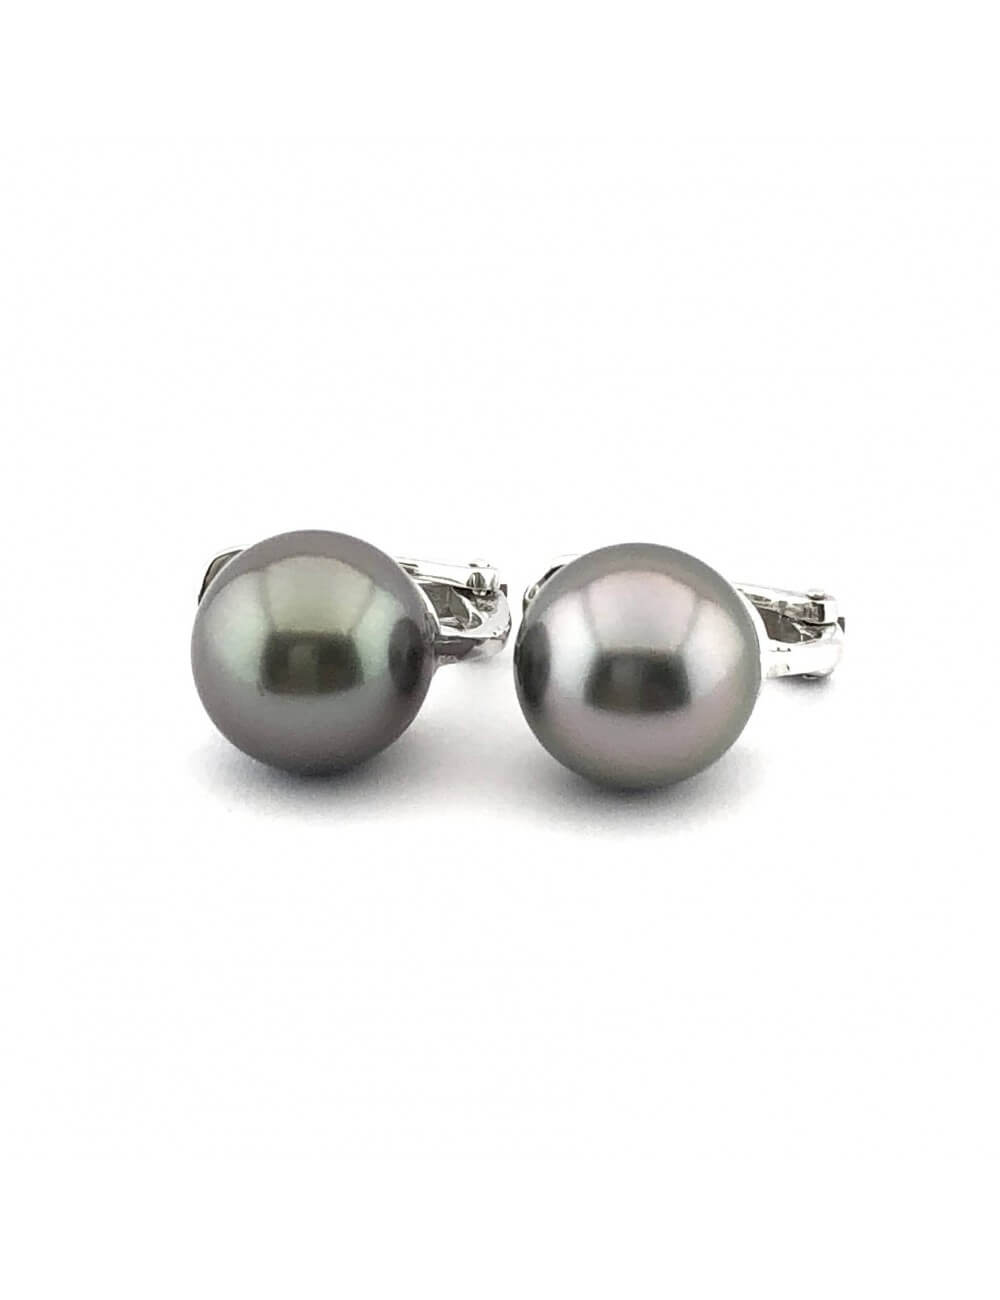 Auskarai su juodais perlais (10mm)